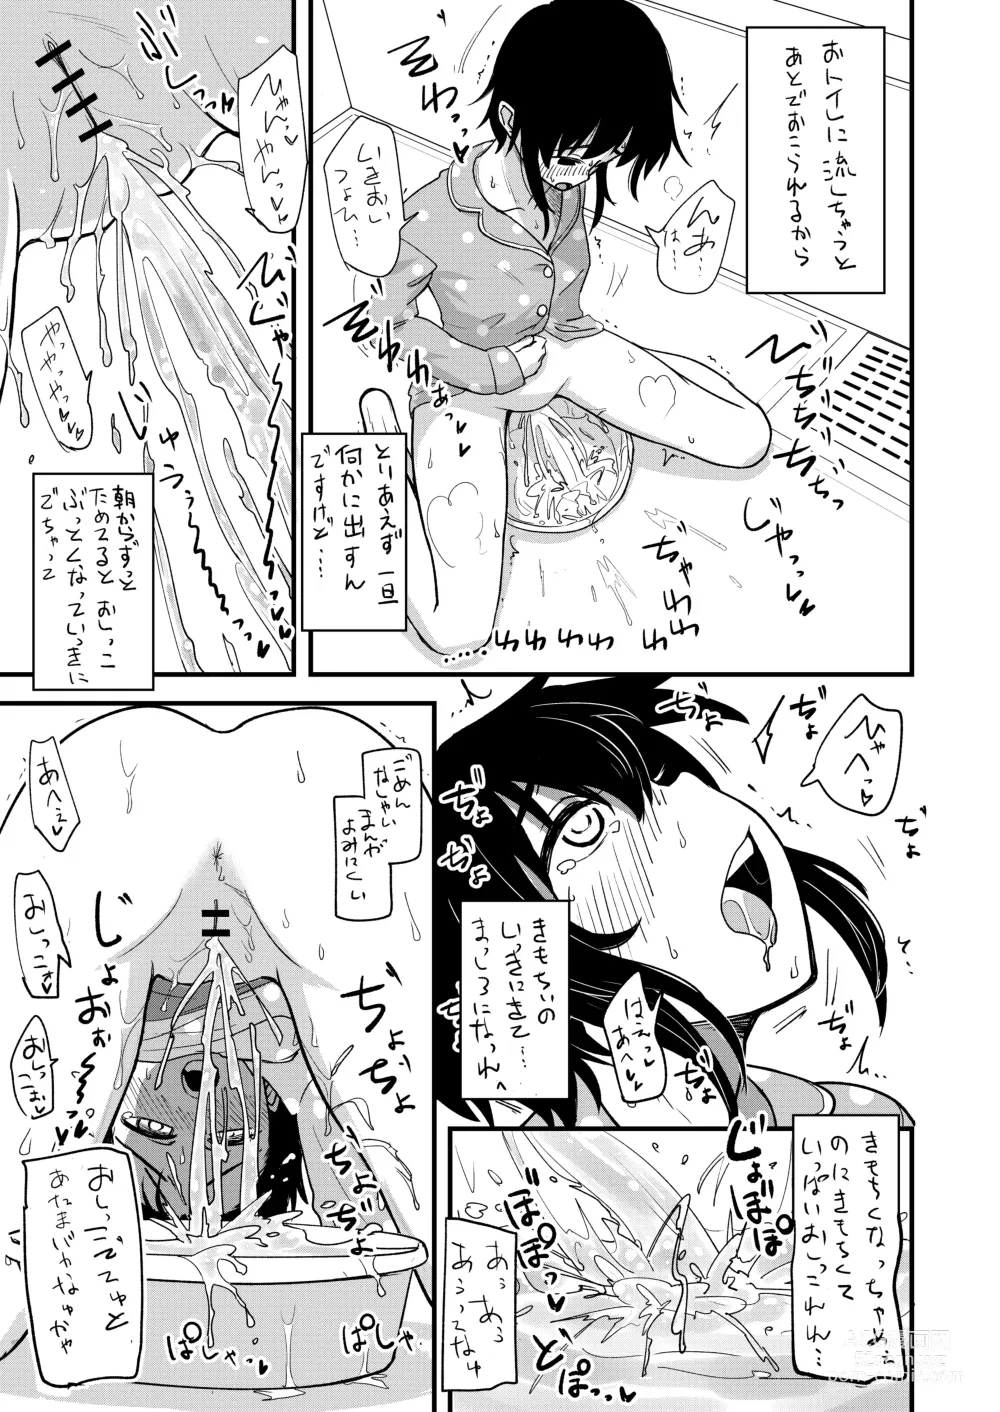 Page 8 of doujinshi Hosomichi no Oku - Mitsu